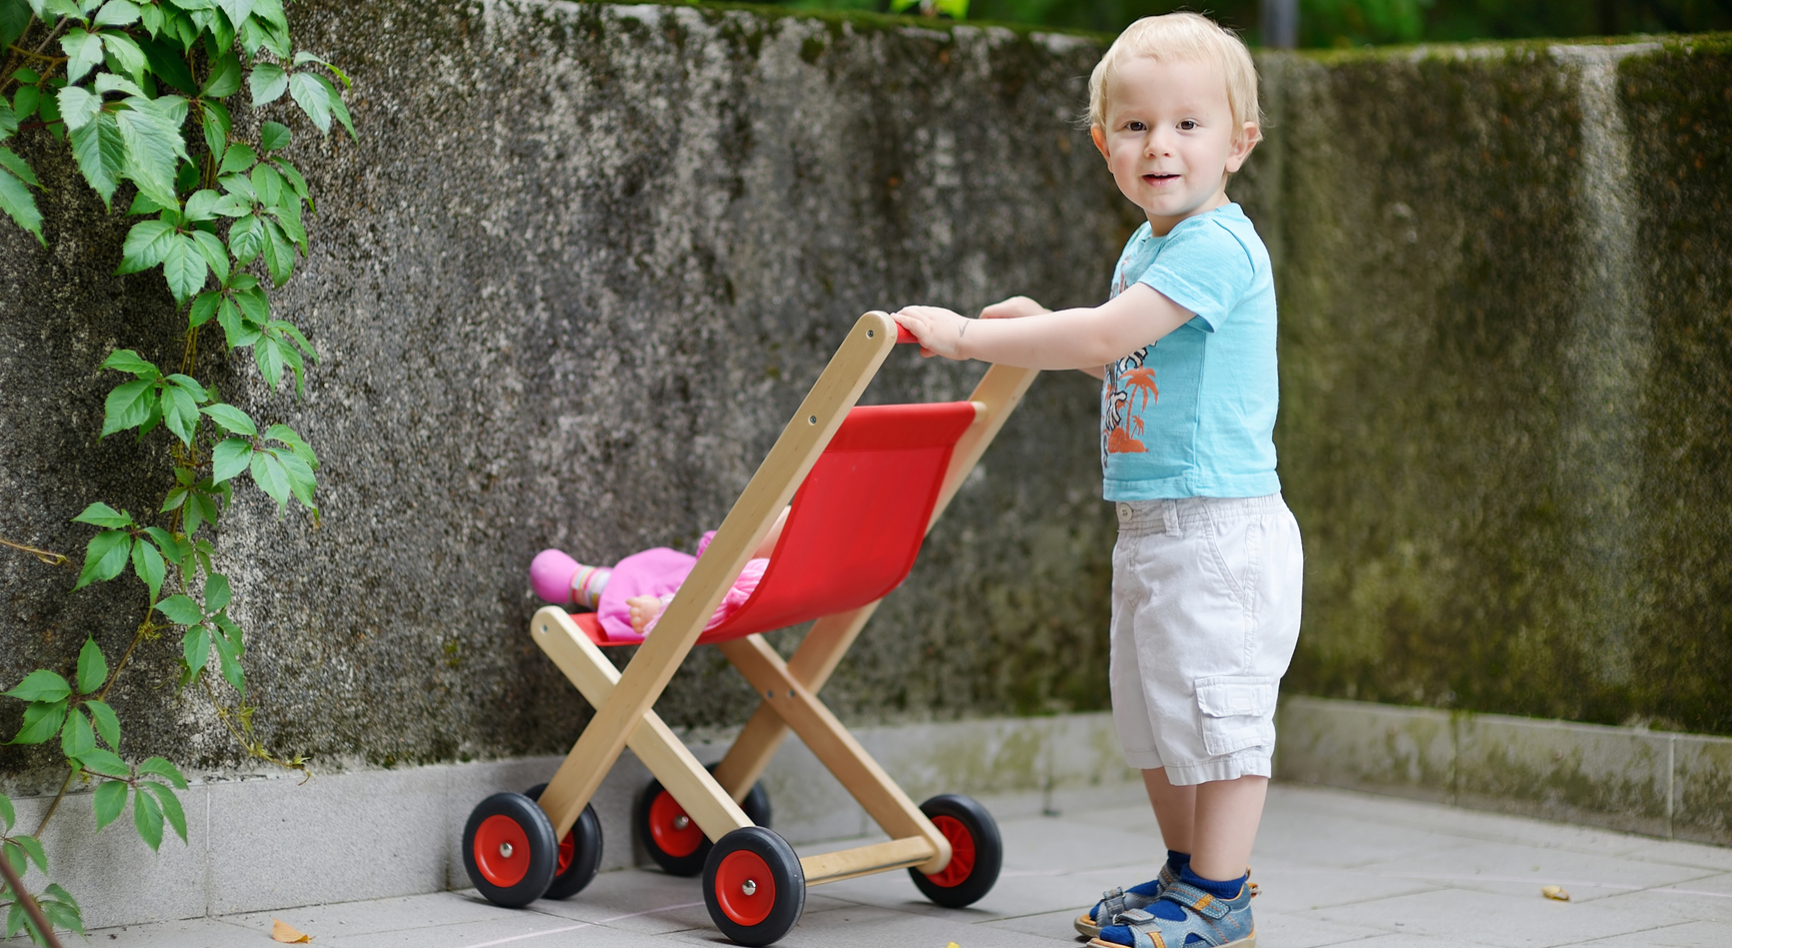 Les petits garçons préfèrent les objets sociaux, comme les poupées, aux jouets non sociaux, comme les voitures. © MNStudio, Shutterstock